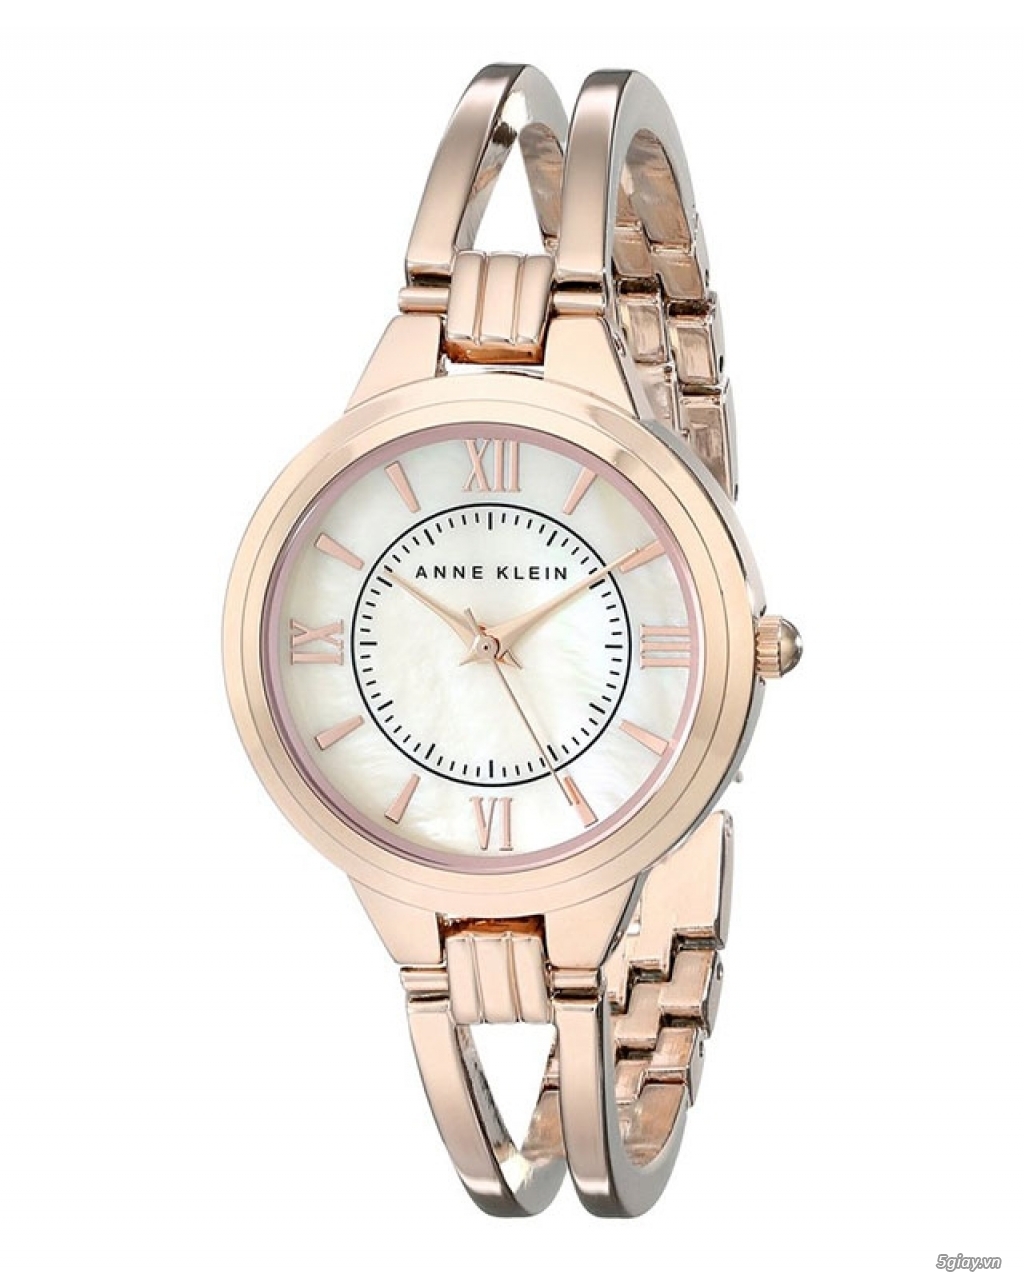 Diệp Anh Store - Chuyên đồng hồ nữ xách tay Mỹ-Anne Klein-Michael Kors - 14